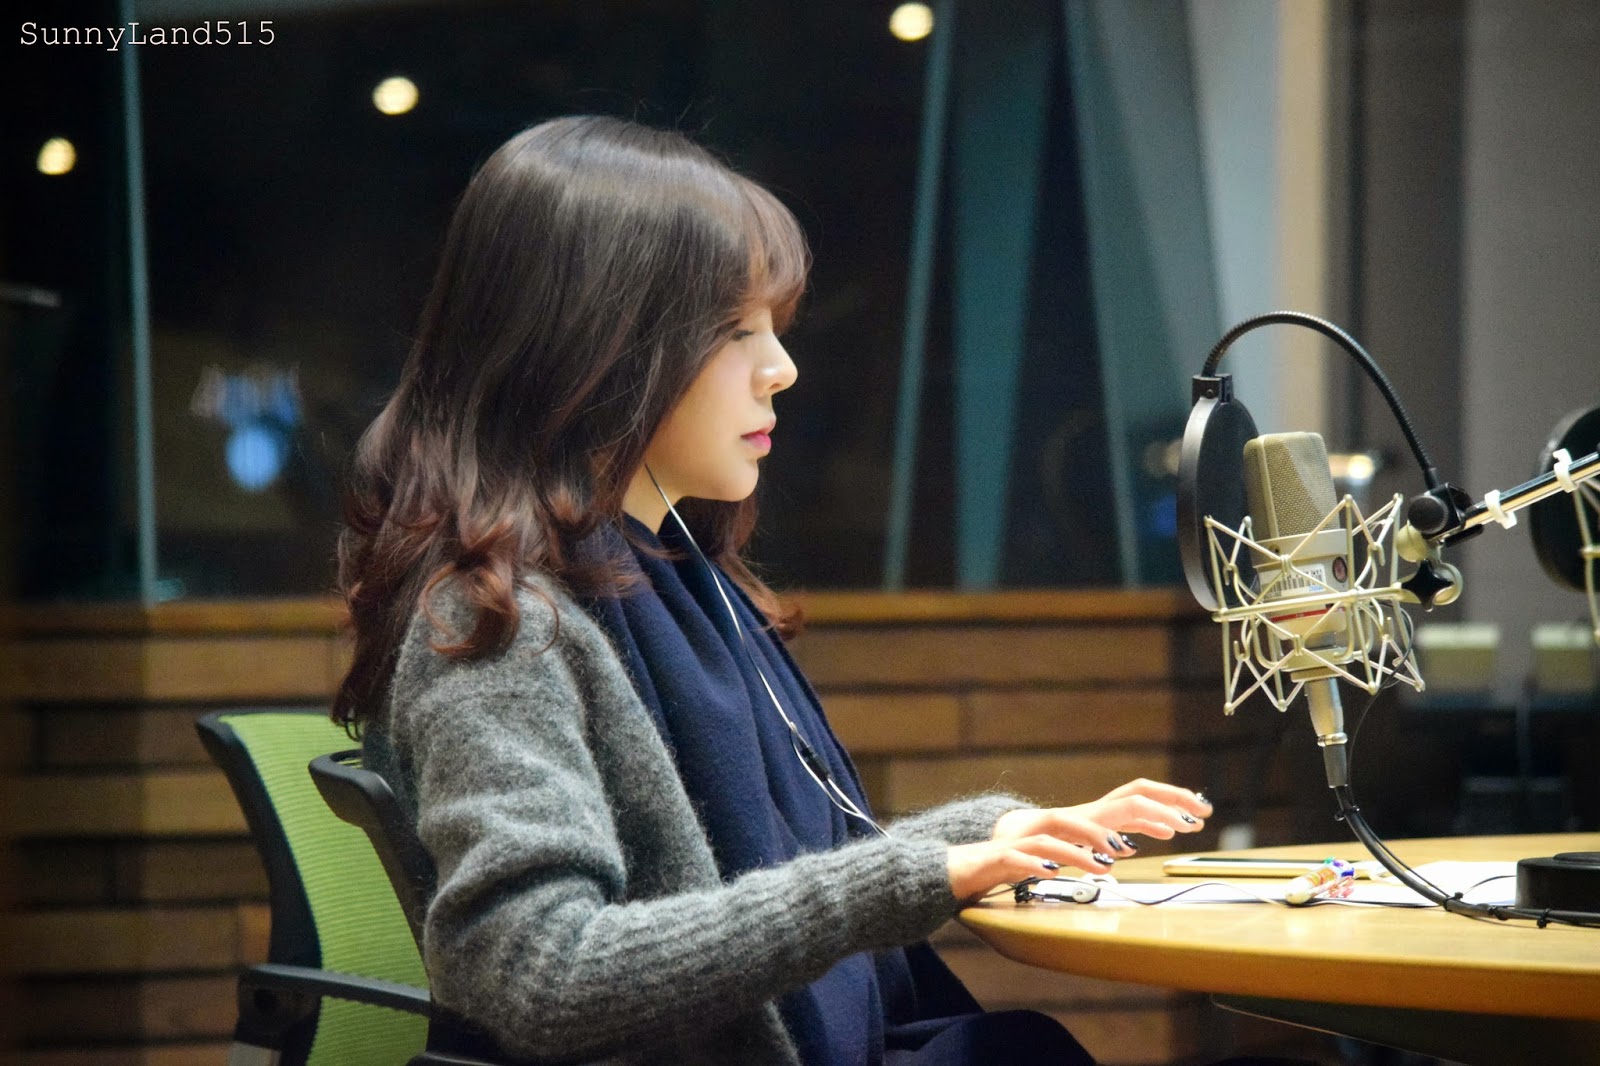 [OTHER][06-02-2015]Hình ảnh mới nhất từ DJ Sunny tại Radio MBC FM4U - "FM Date" - Page 10 DSC_0074_Fotor